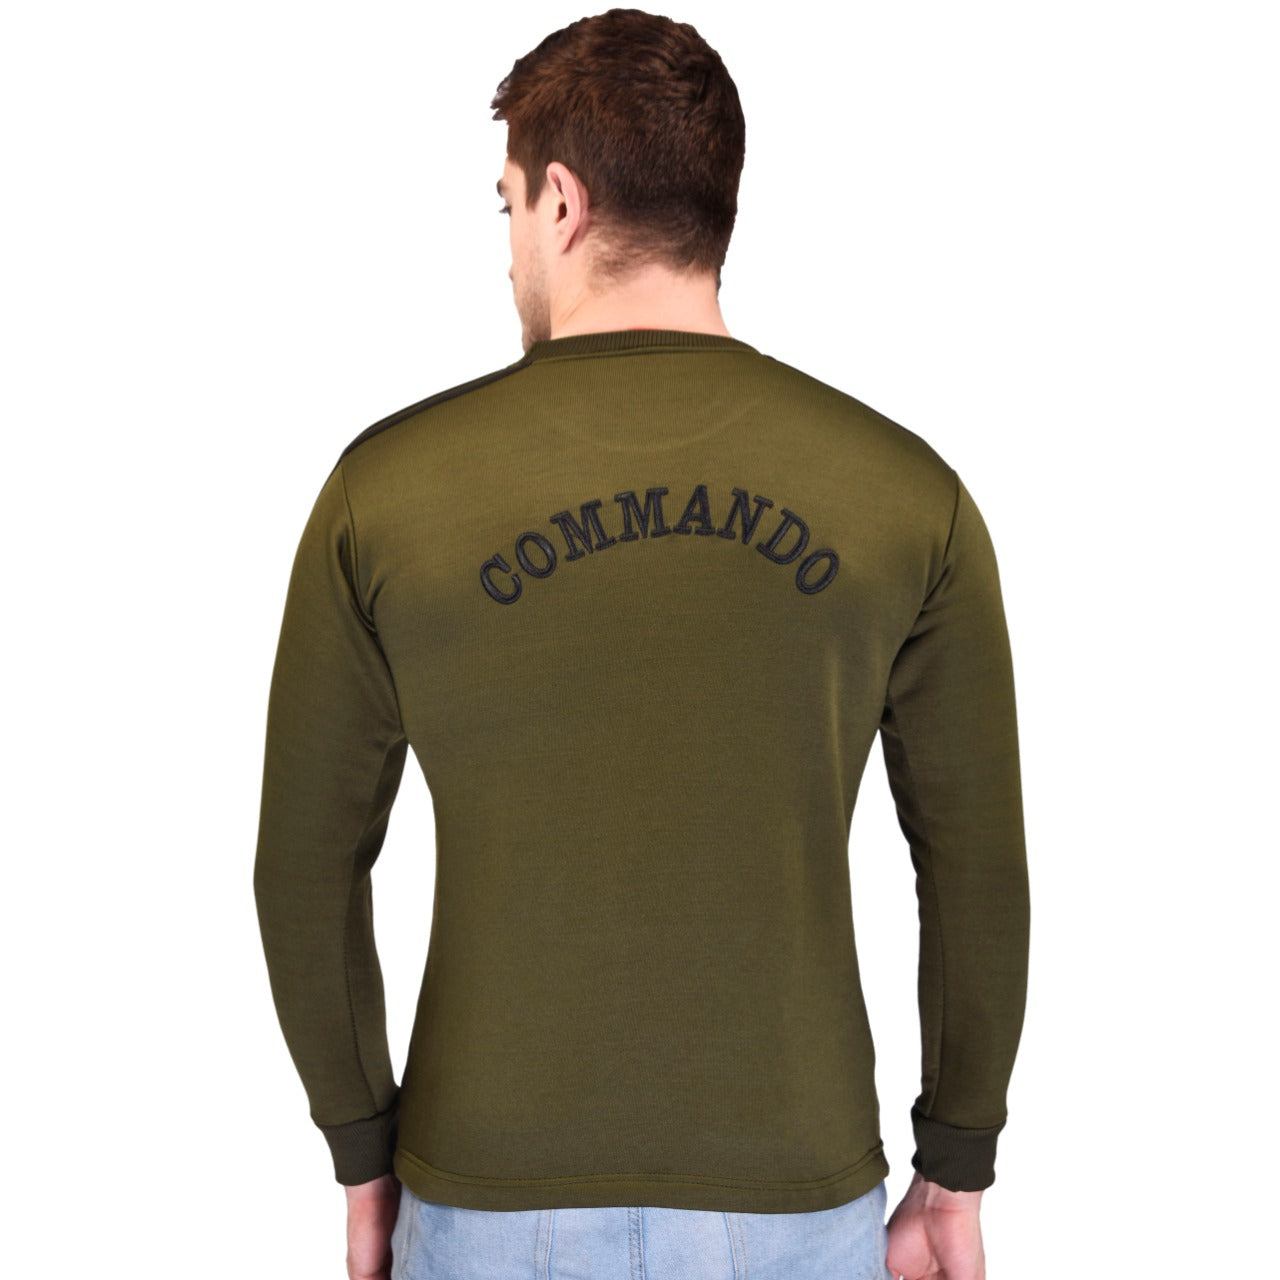 COMMANDO Tiranga Logo Round Neck OG Olive Green Full Sleeve Unisex Winter Sweat Shirt Army Military Defence